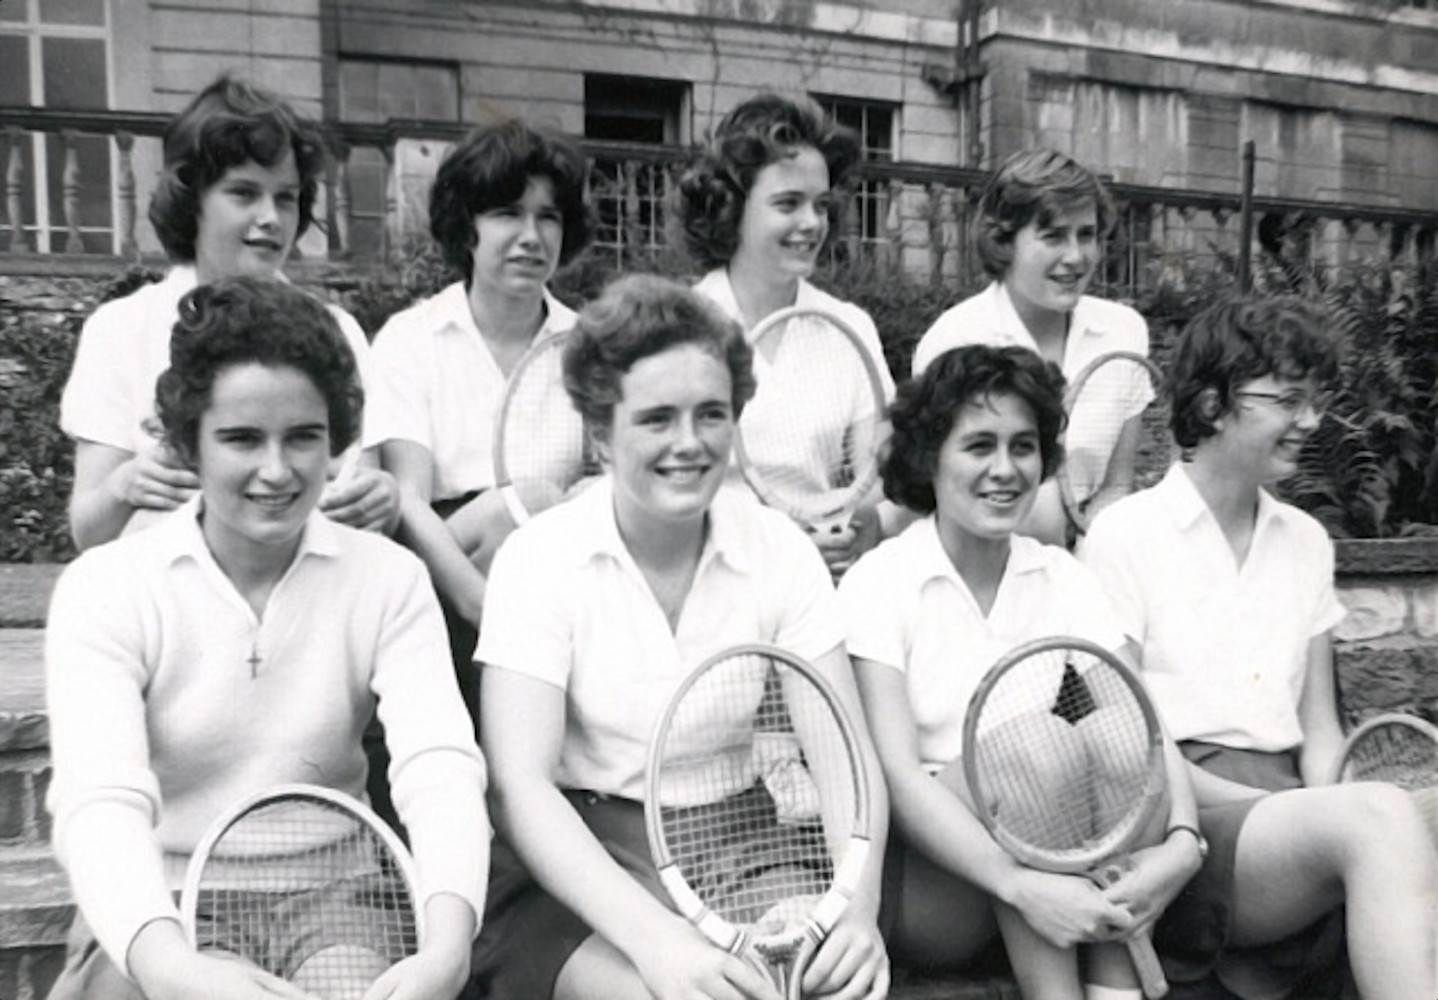 In het verleden kregen de meisjes op Engelse kostscholen standaard billenkoek als straf. Omdat op een aantal kostscholen tennis onderdeel uitmaakte van het programma, gebeurde dat dus ook bij tennis.